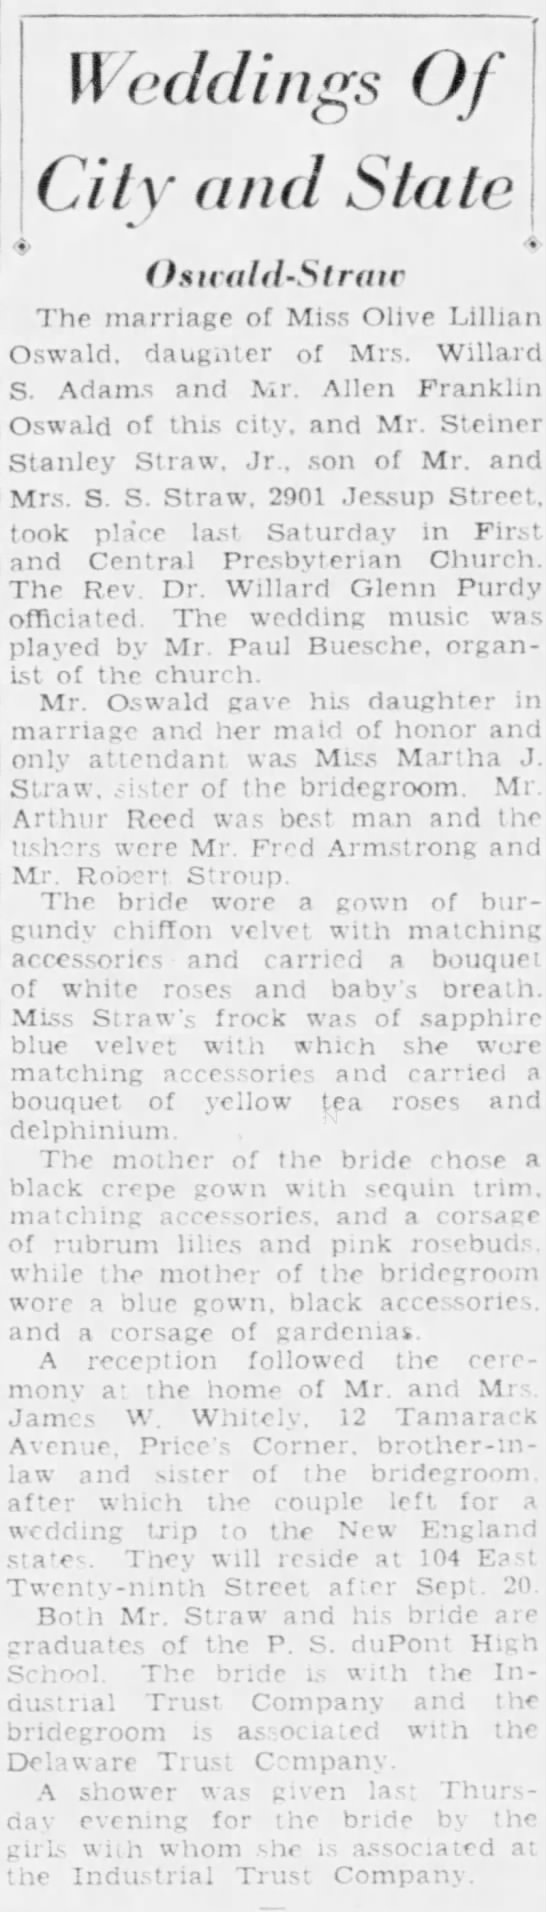 Oswald-Straw wedding - 